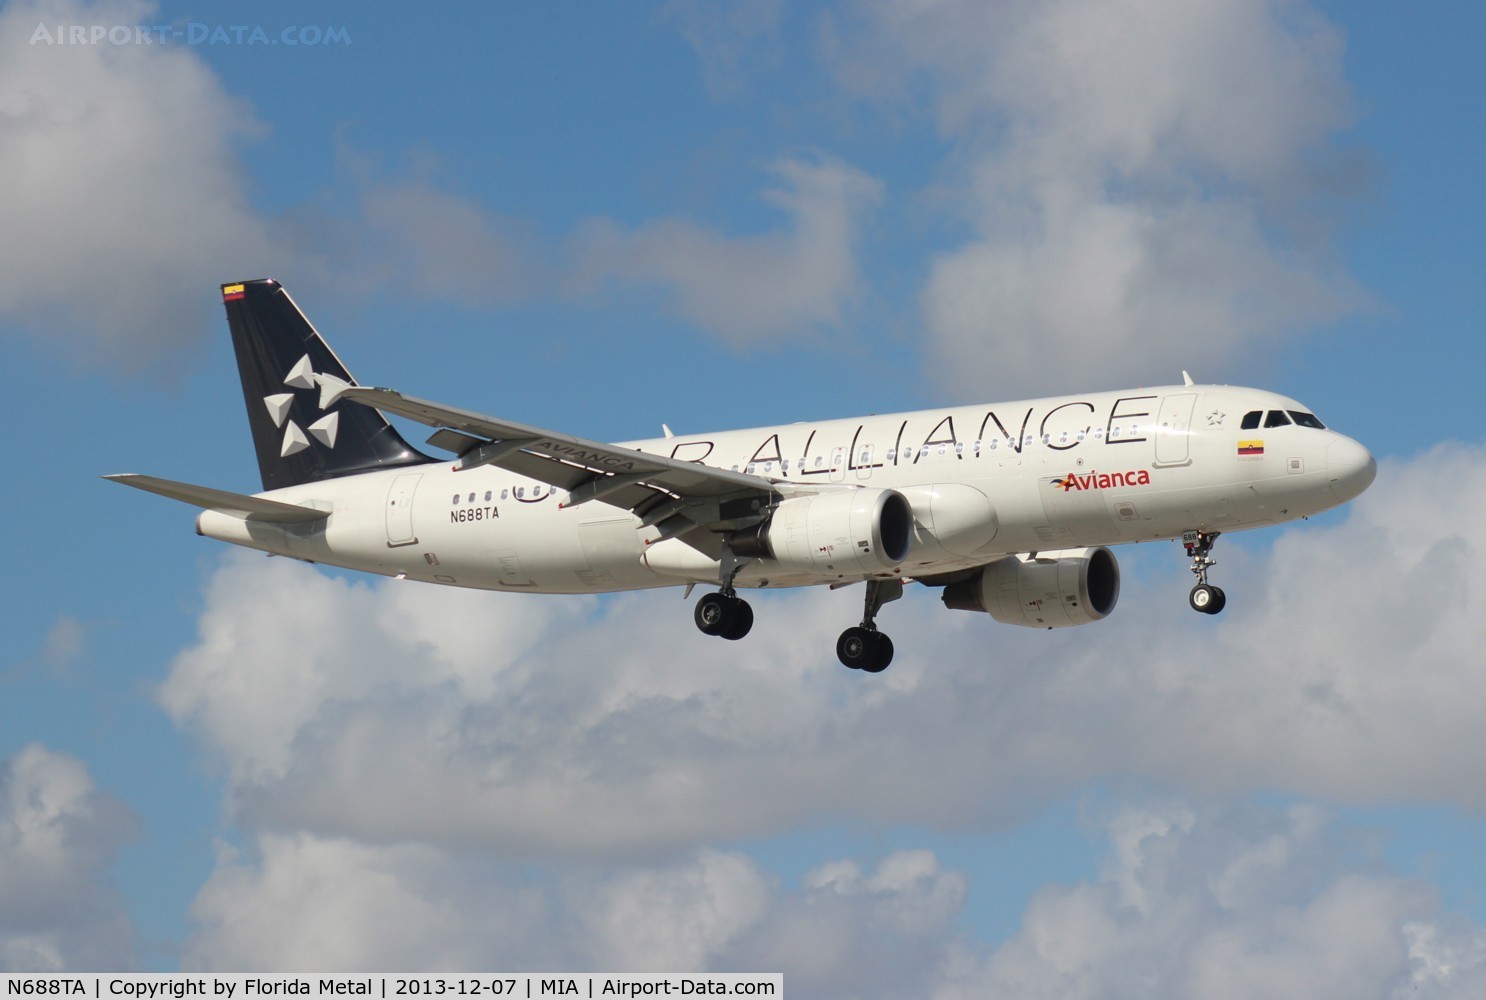 N688TA, 2012 Airbus A320-214 C/N 5243, Avianca Star Alliance A320